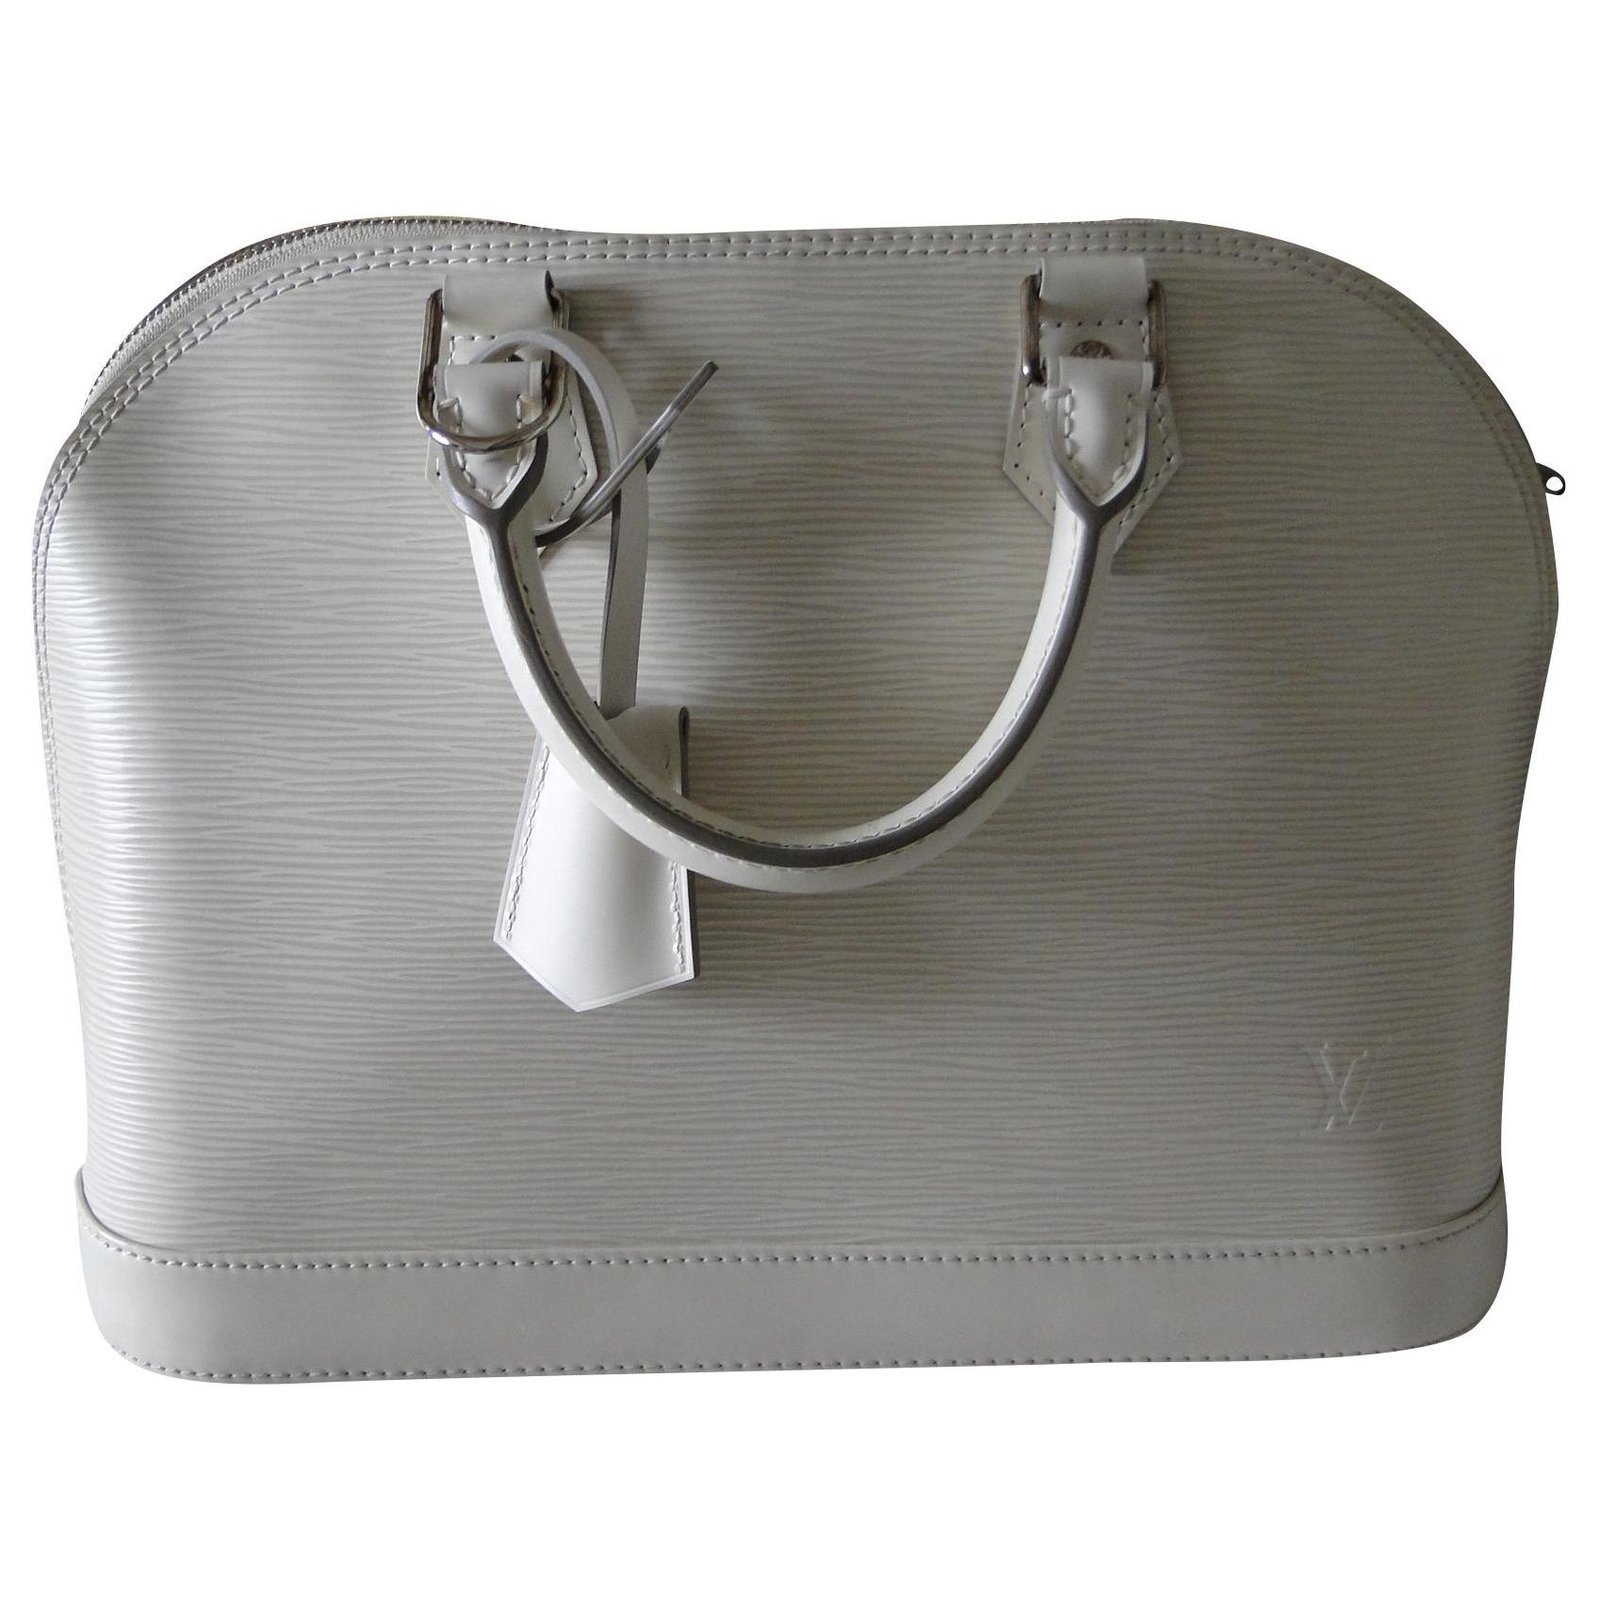 Louis Vuitton Alma Epi Leather Shoulder Bag Beige